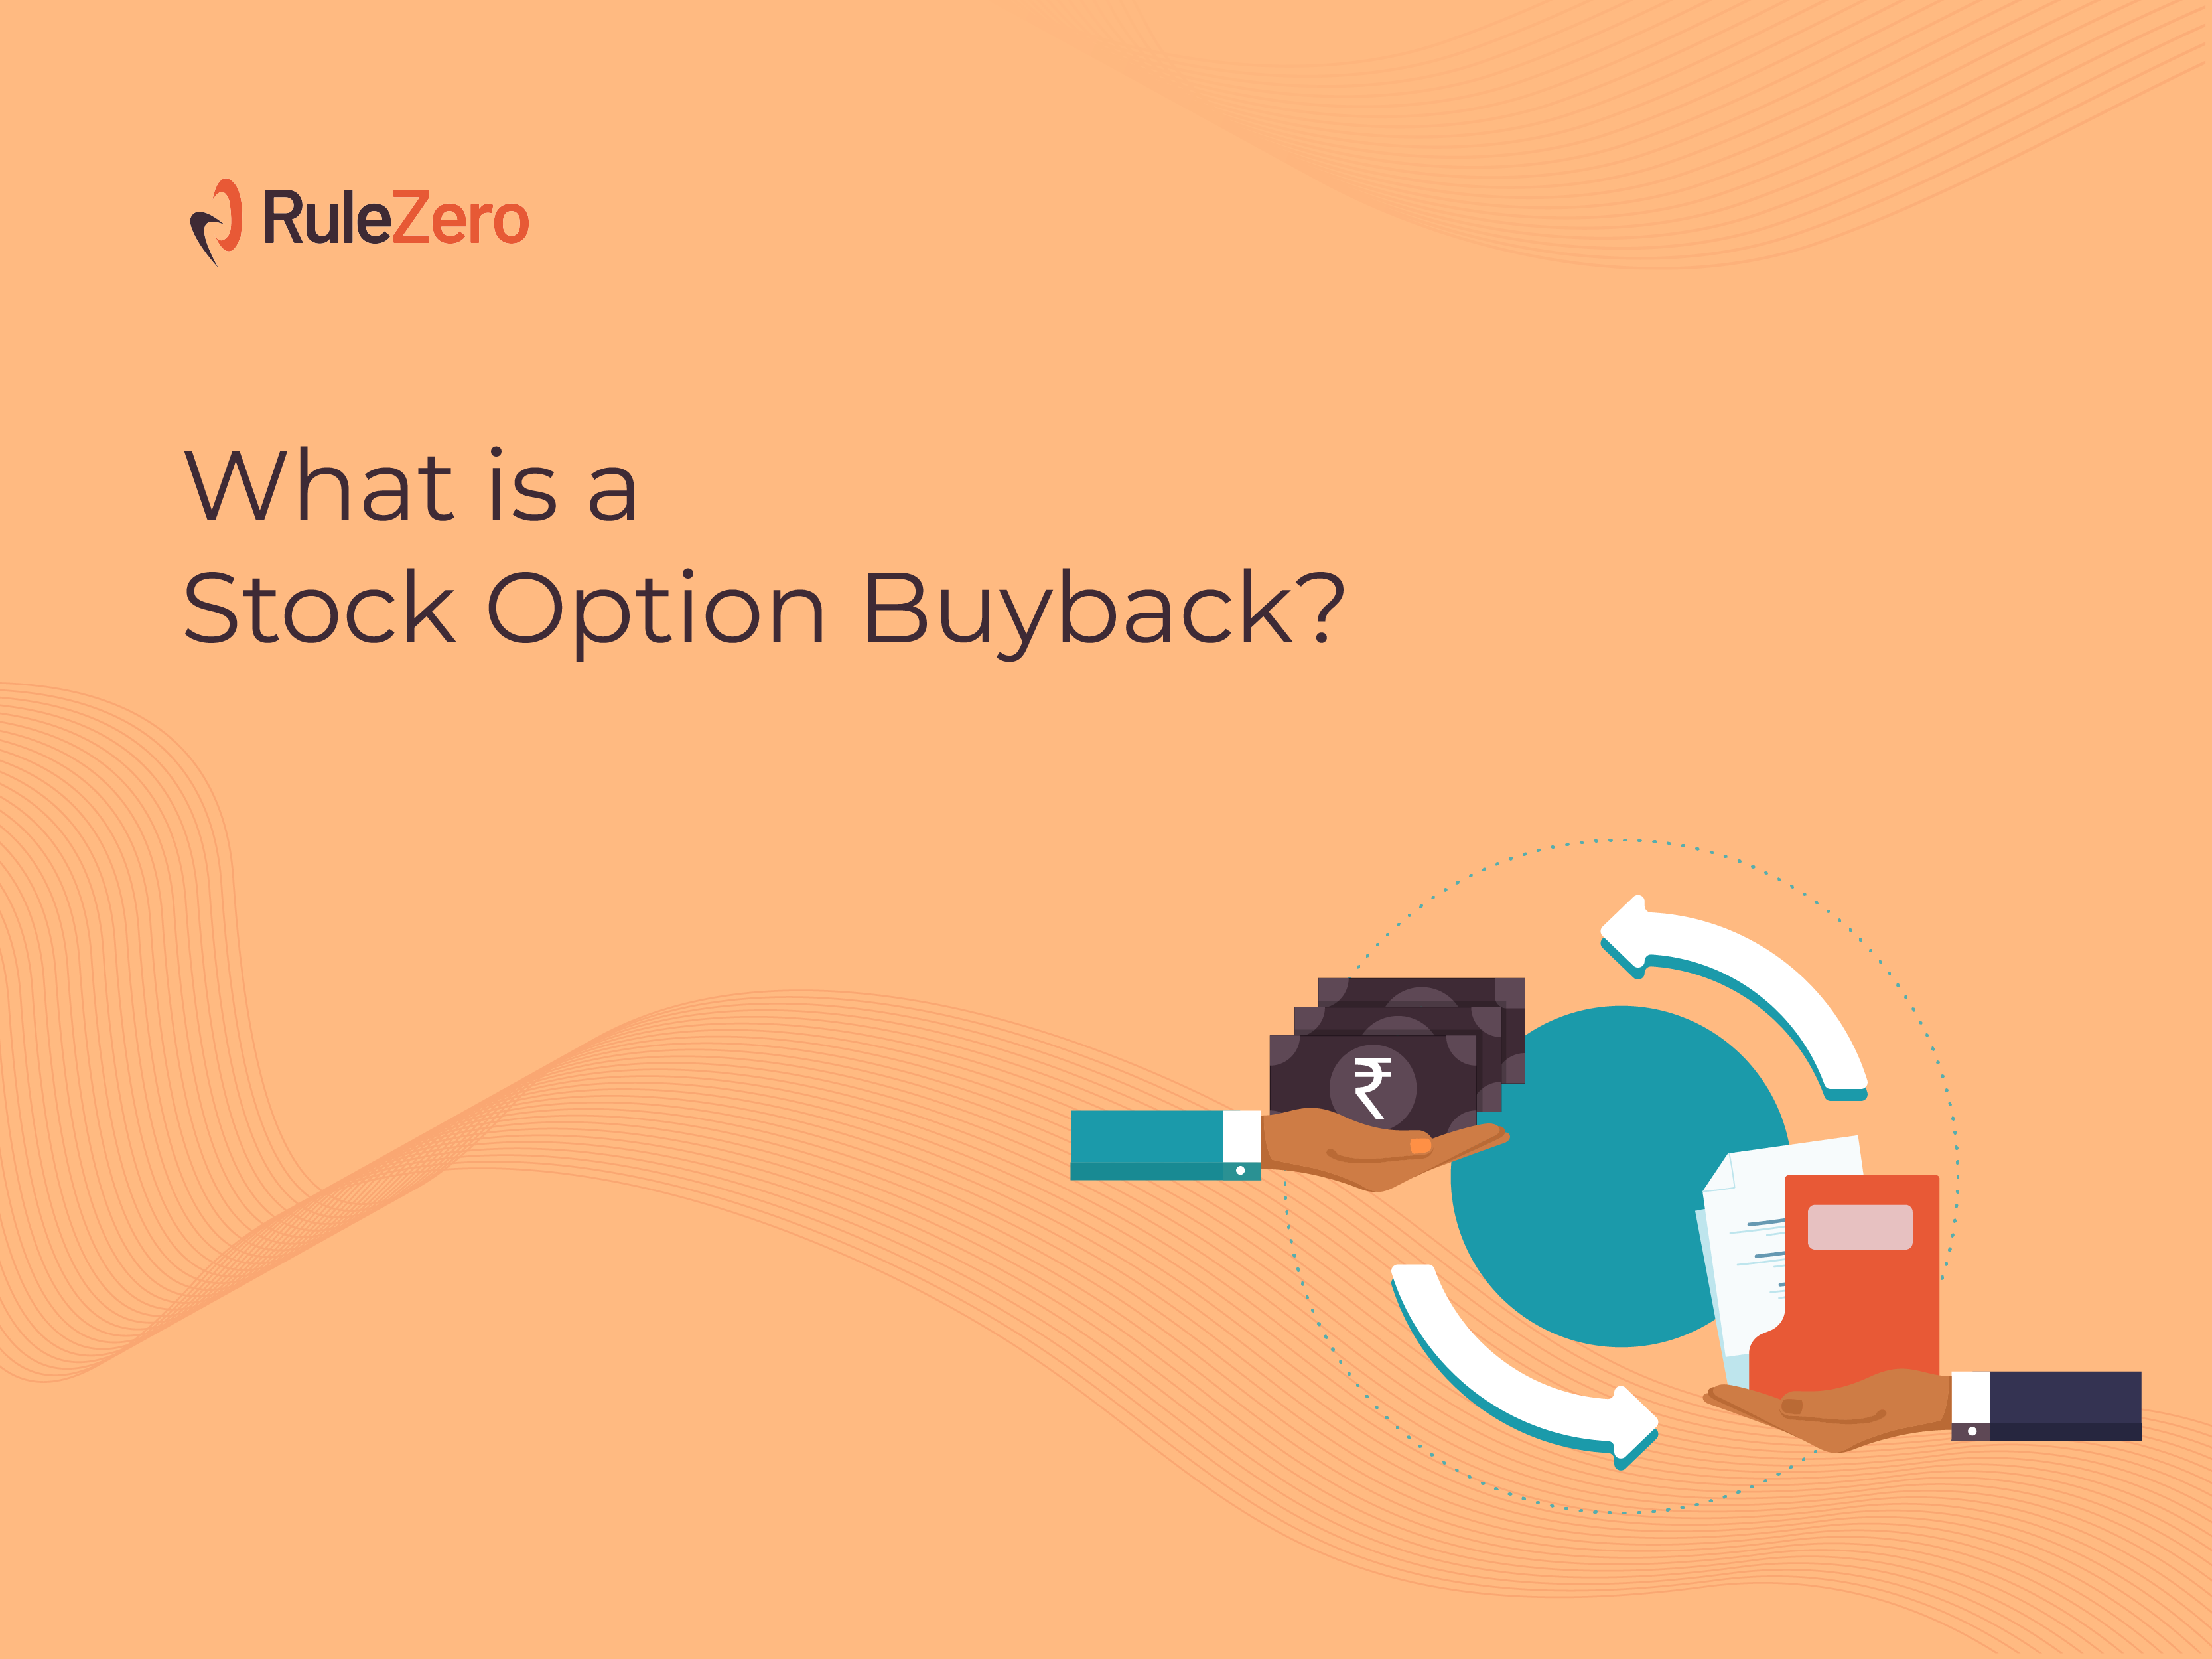 Stock option buyback